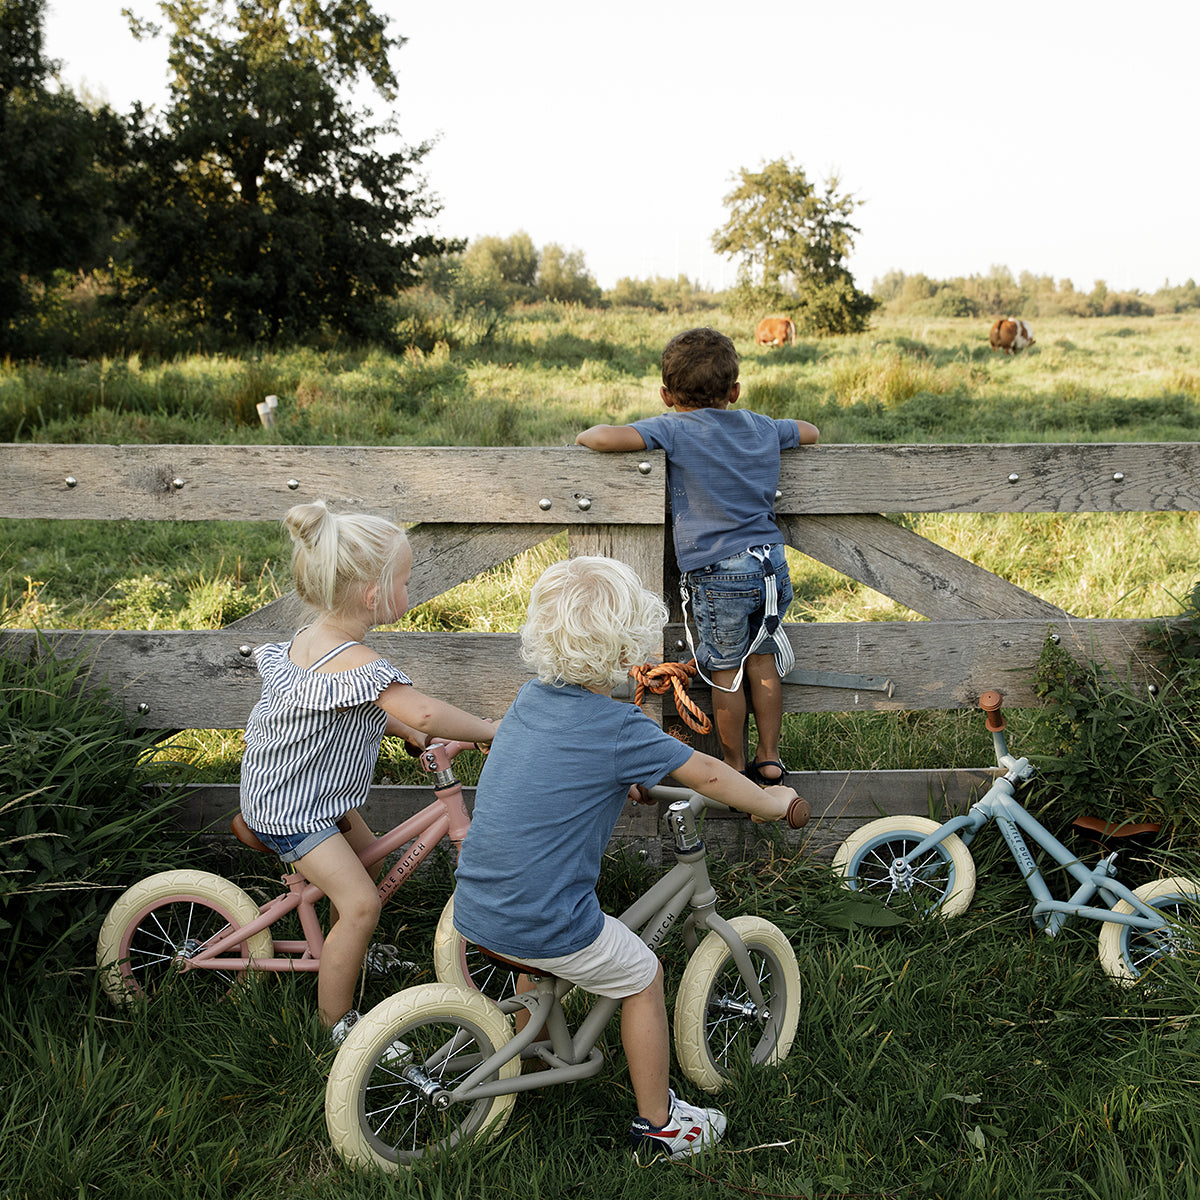 Laat je kindje eerste stapjes richting het leren fietsen zetten met deze prachtige 12-inch loopfiets van Little Dutch. De stoere fiets bevordert de motorische ontwikkeling van je kind en zorgt voor speelplezier. VanZus